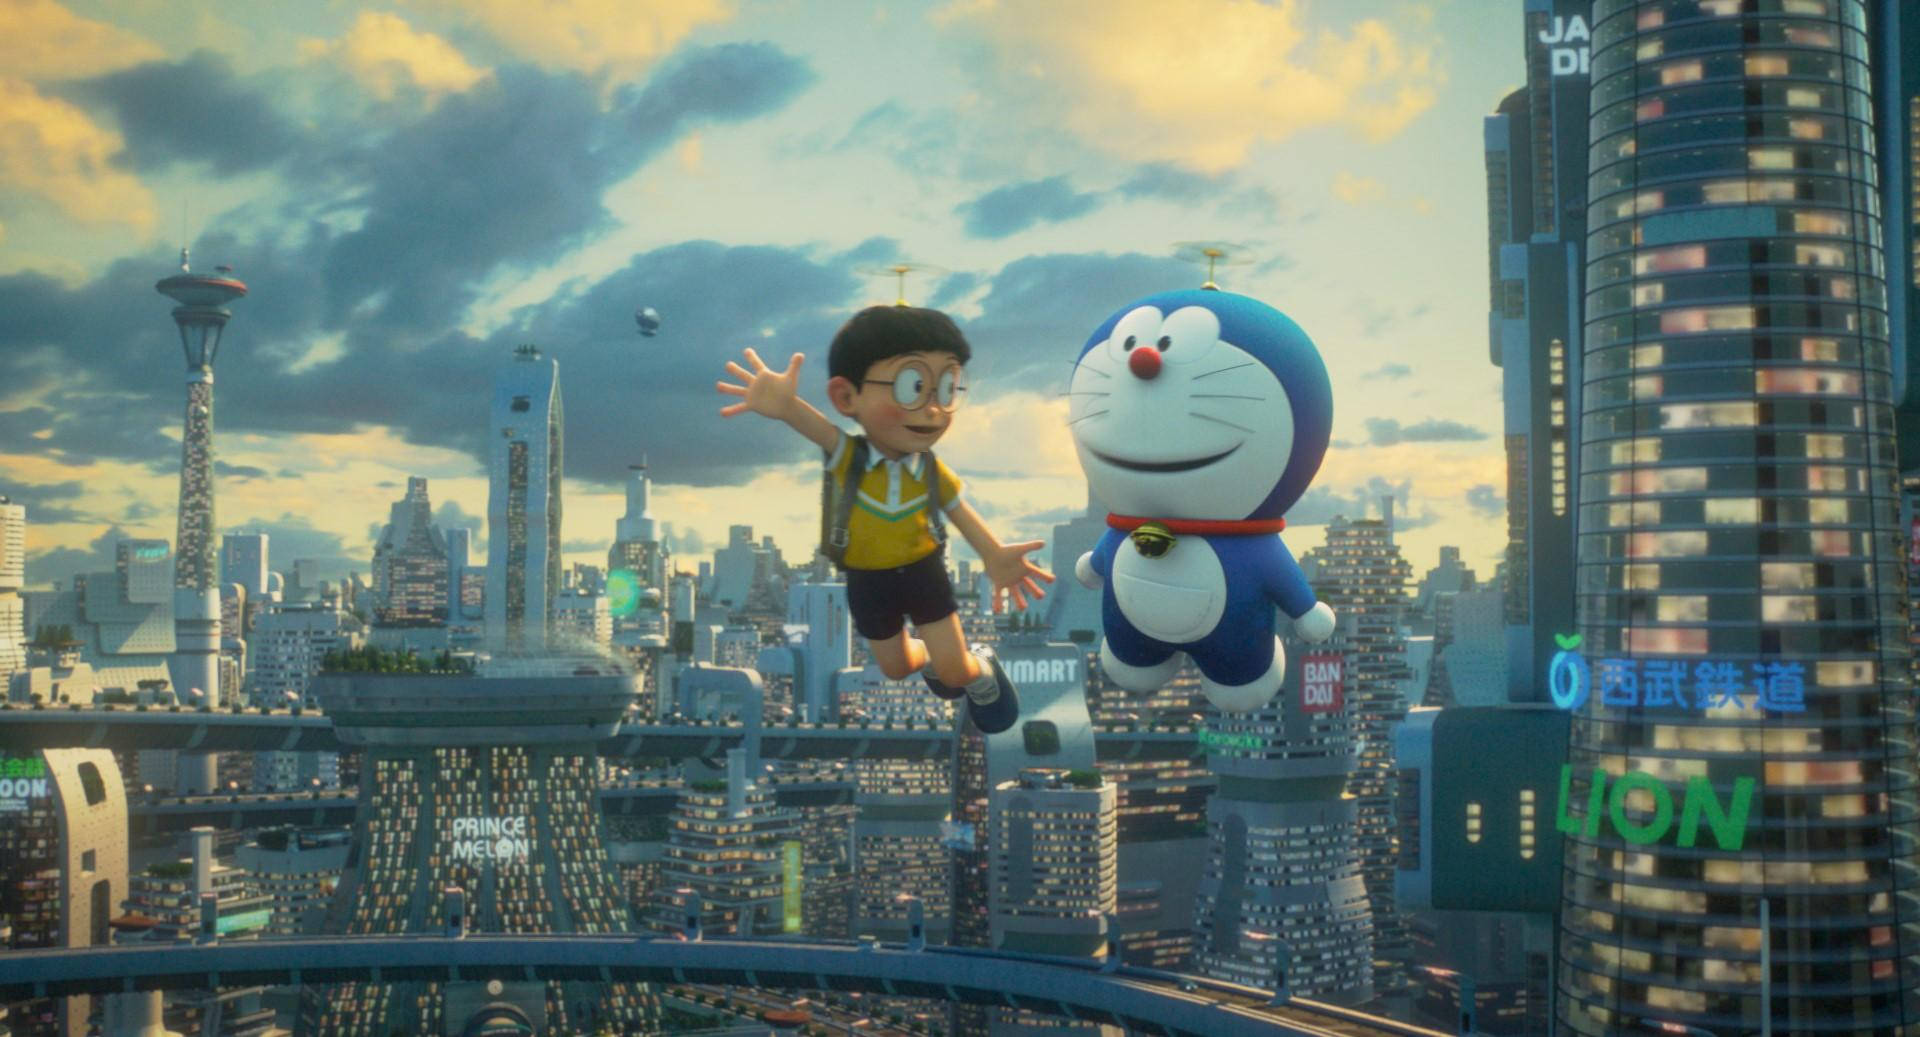 Doraemon And Nobita Futuristic City Background